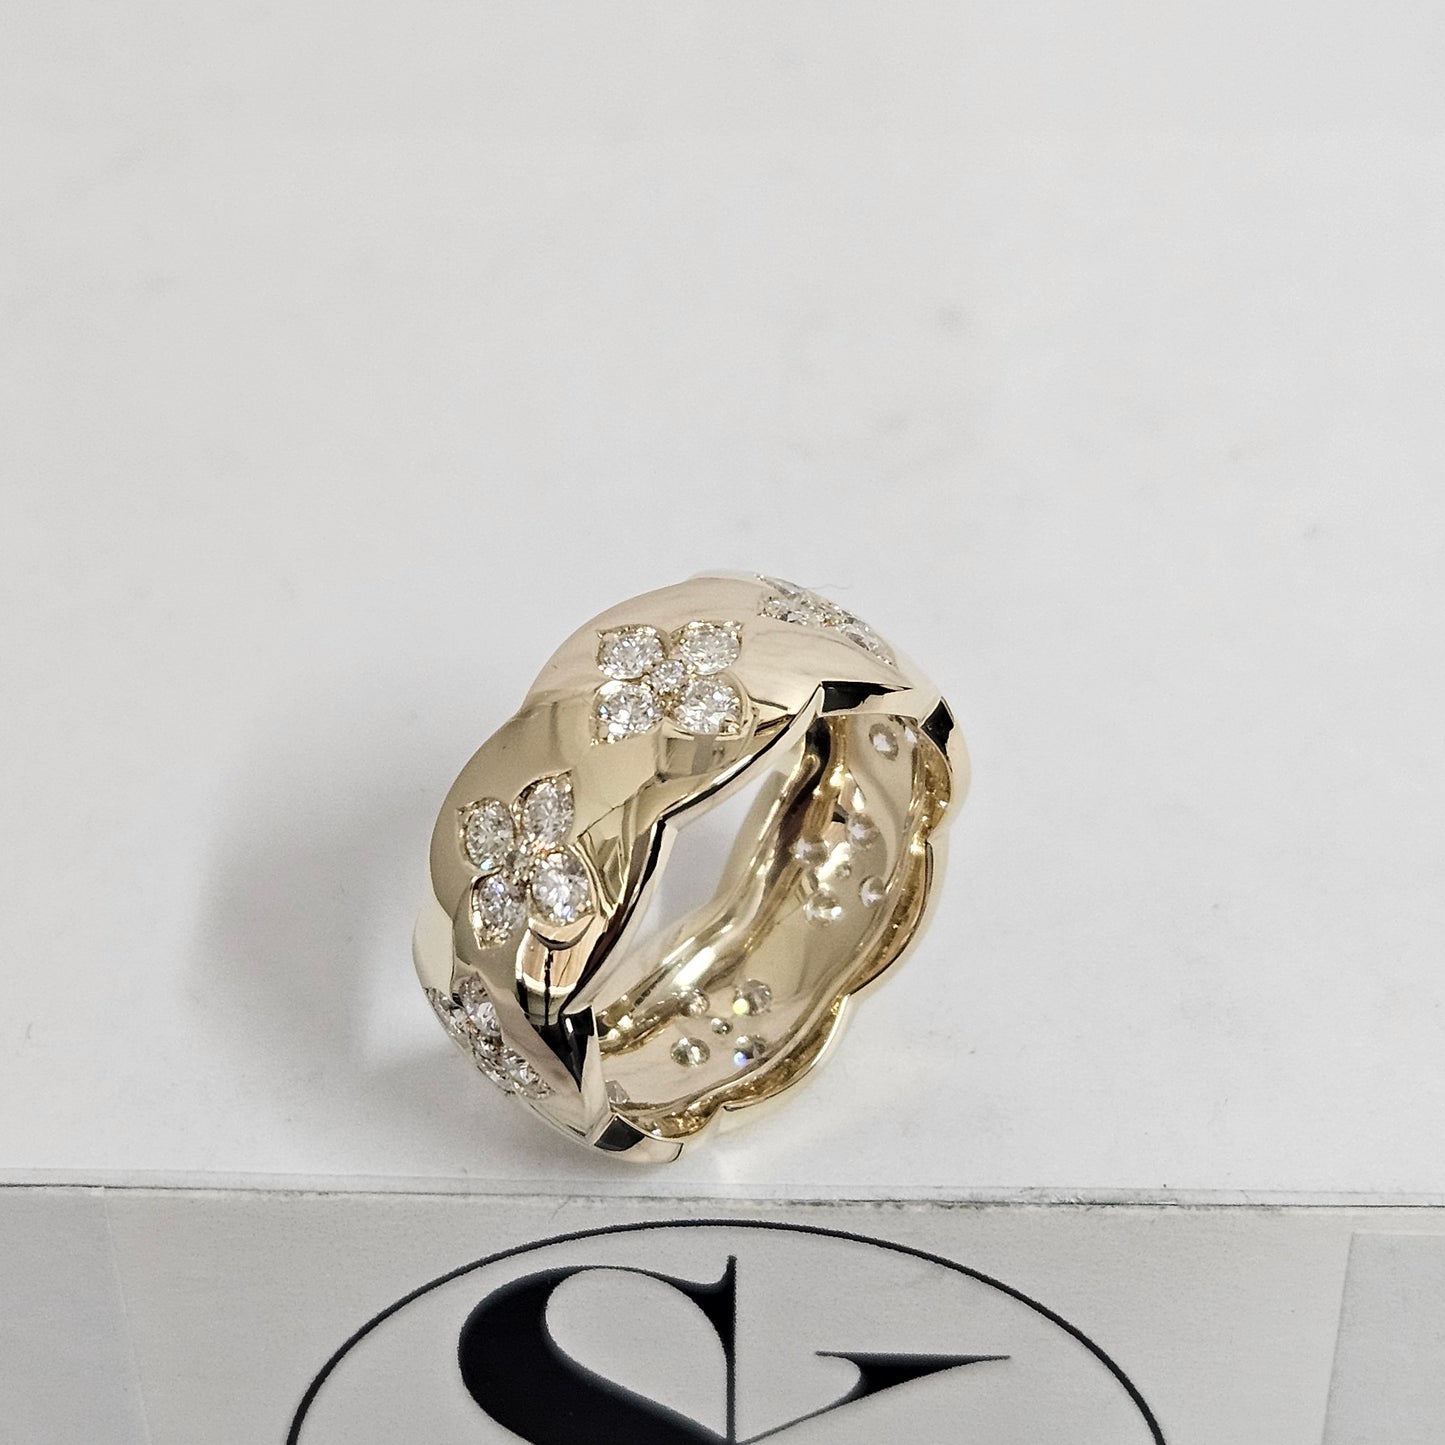 Flower Full Diamond Band / 4K,18K gold Diamond Eternity ring / Flower Natural Diamond Wedding Ring / Anniversary Ring / Gift for her